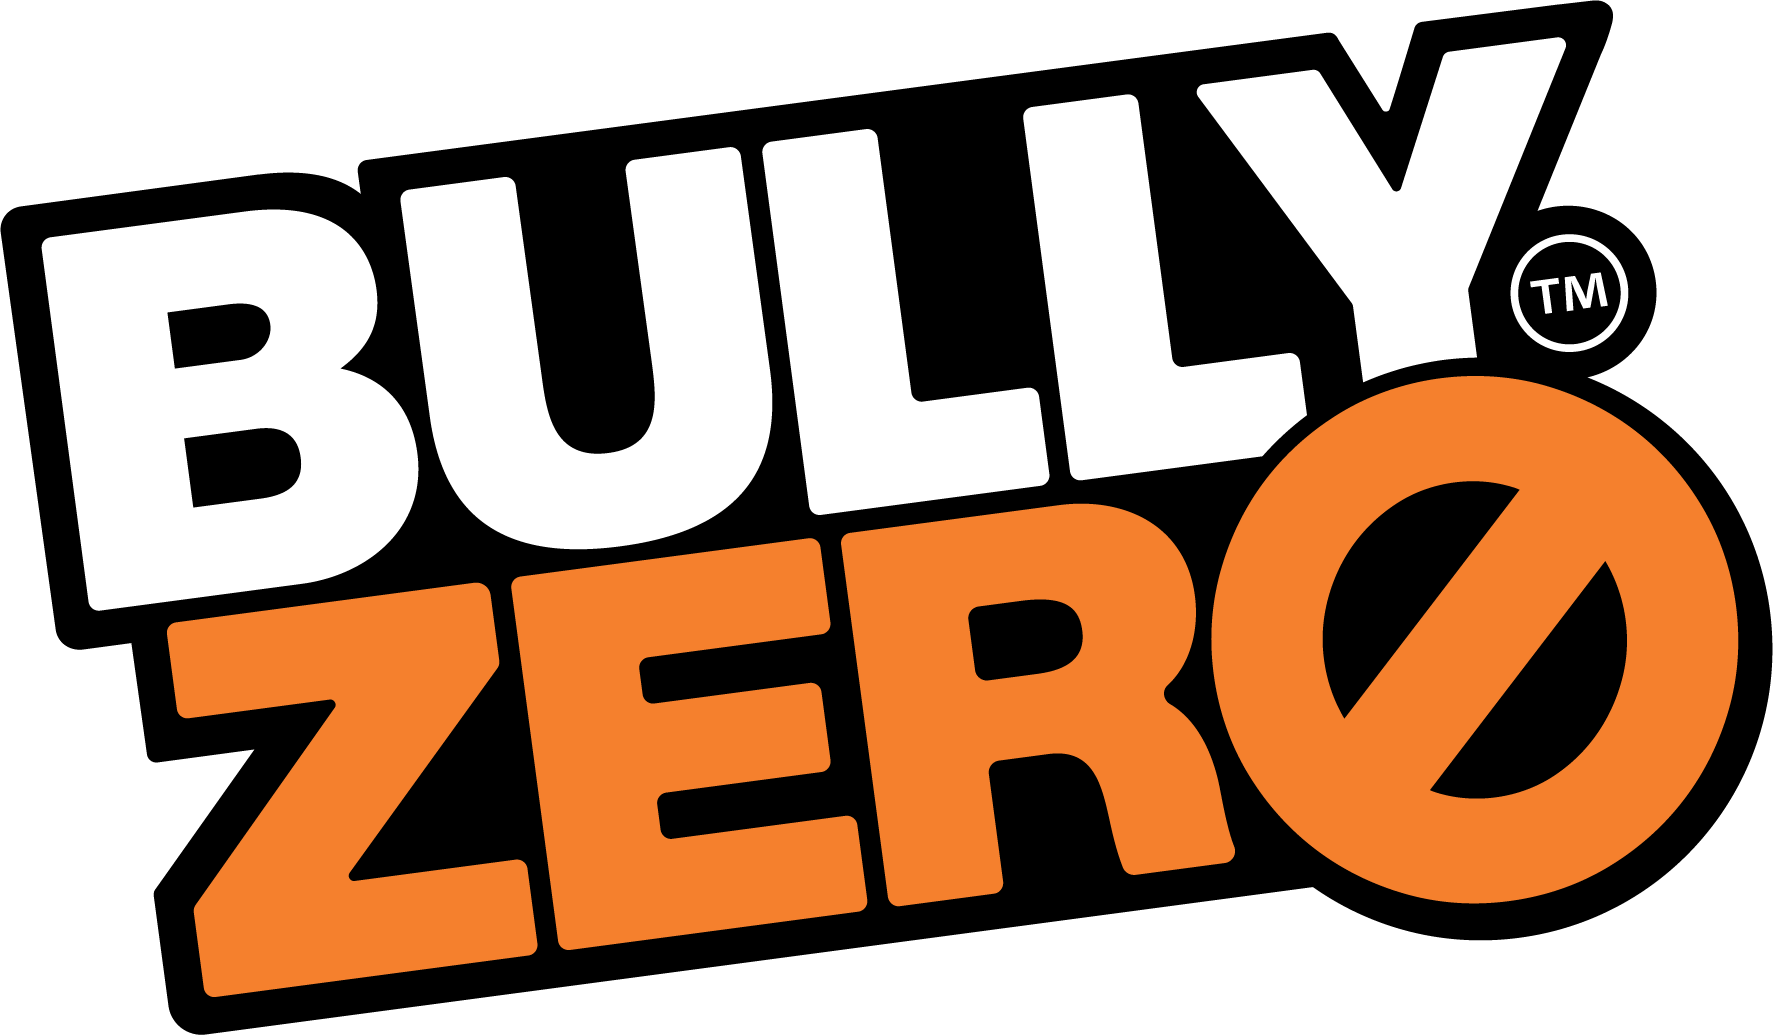 bullyzero-brandmark-pos.png